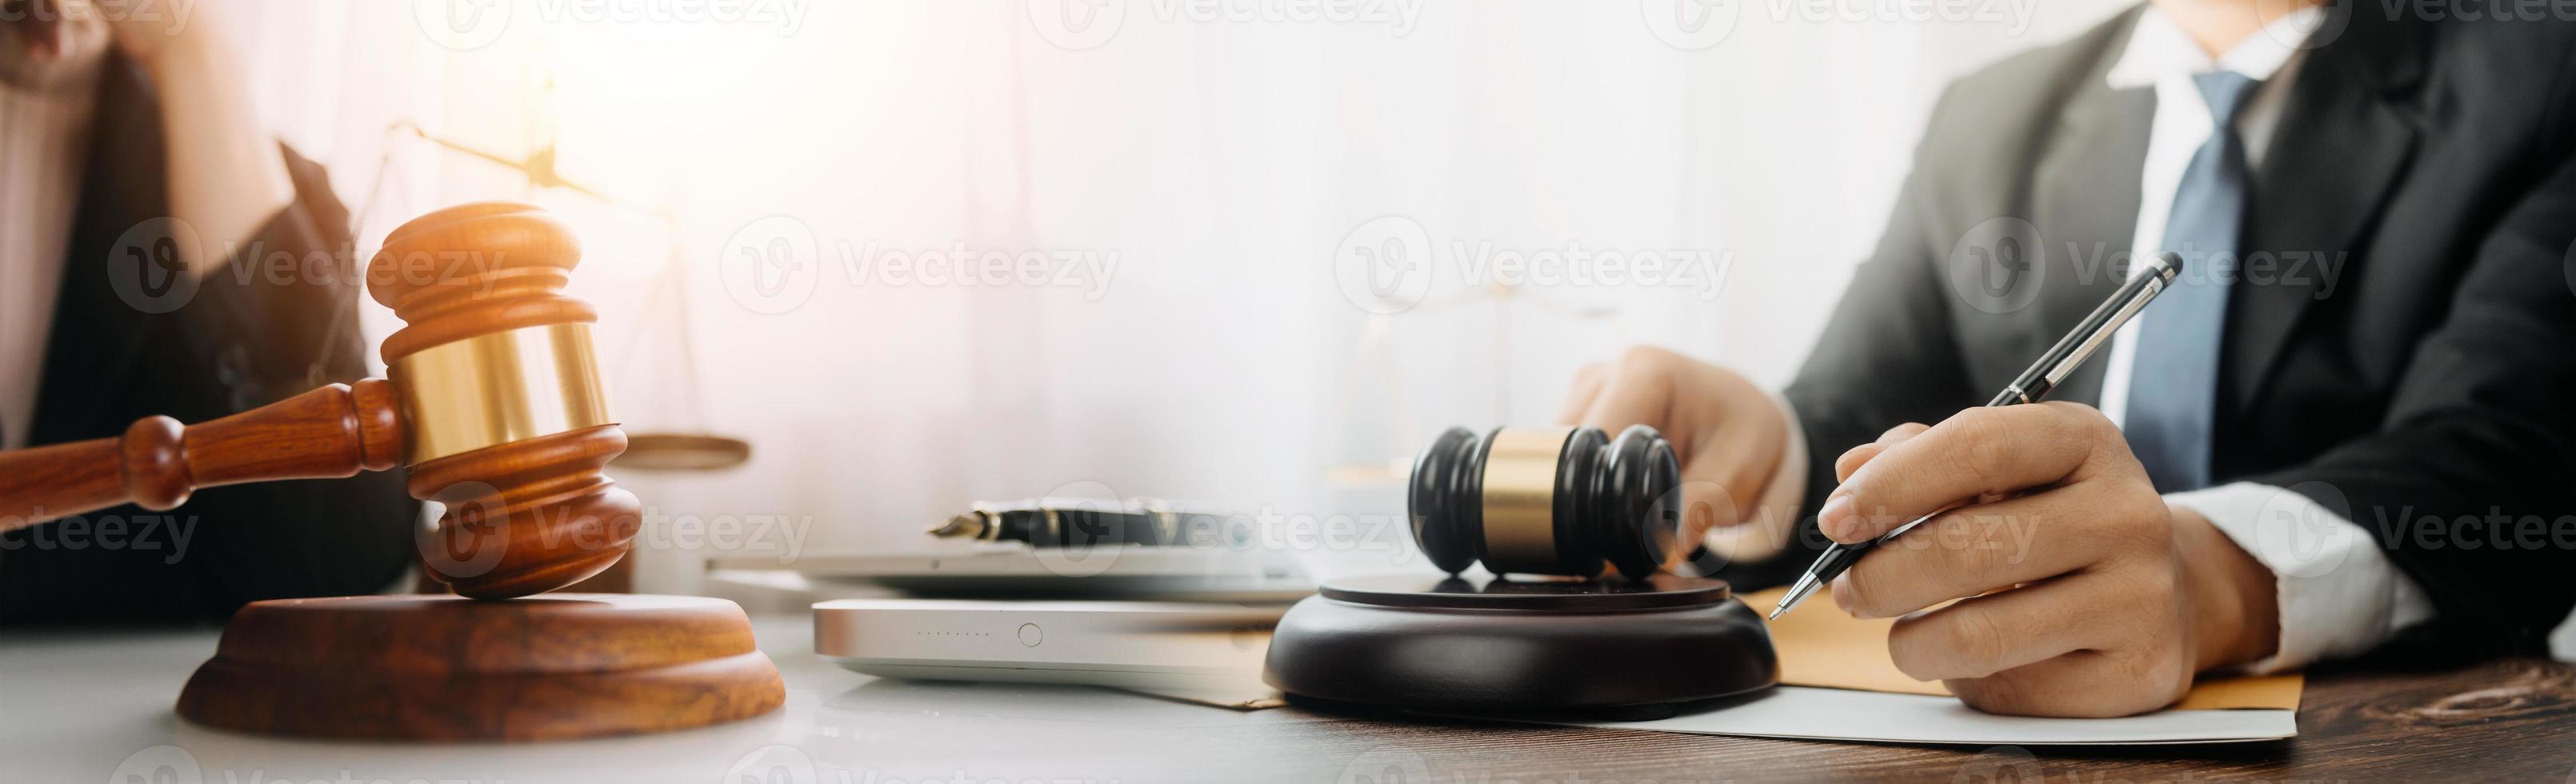 concetto di giustizia e diritto. giudice maschio in un'aula di tribunale con il martelletto, lavorando con computer e tastiera docking, occhiali, sul tavolo alla luce del mattino foto